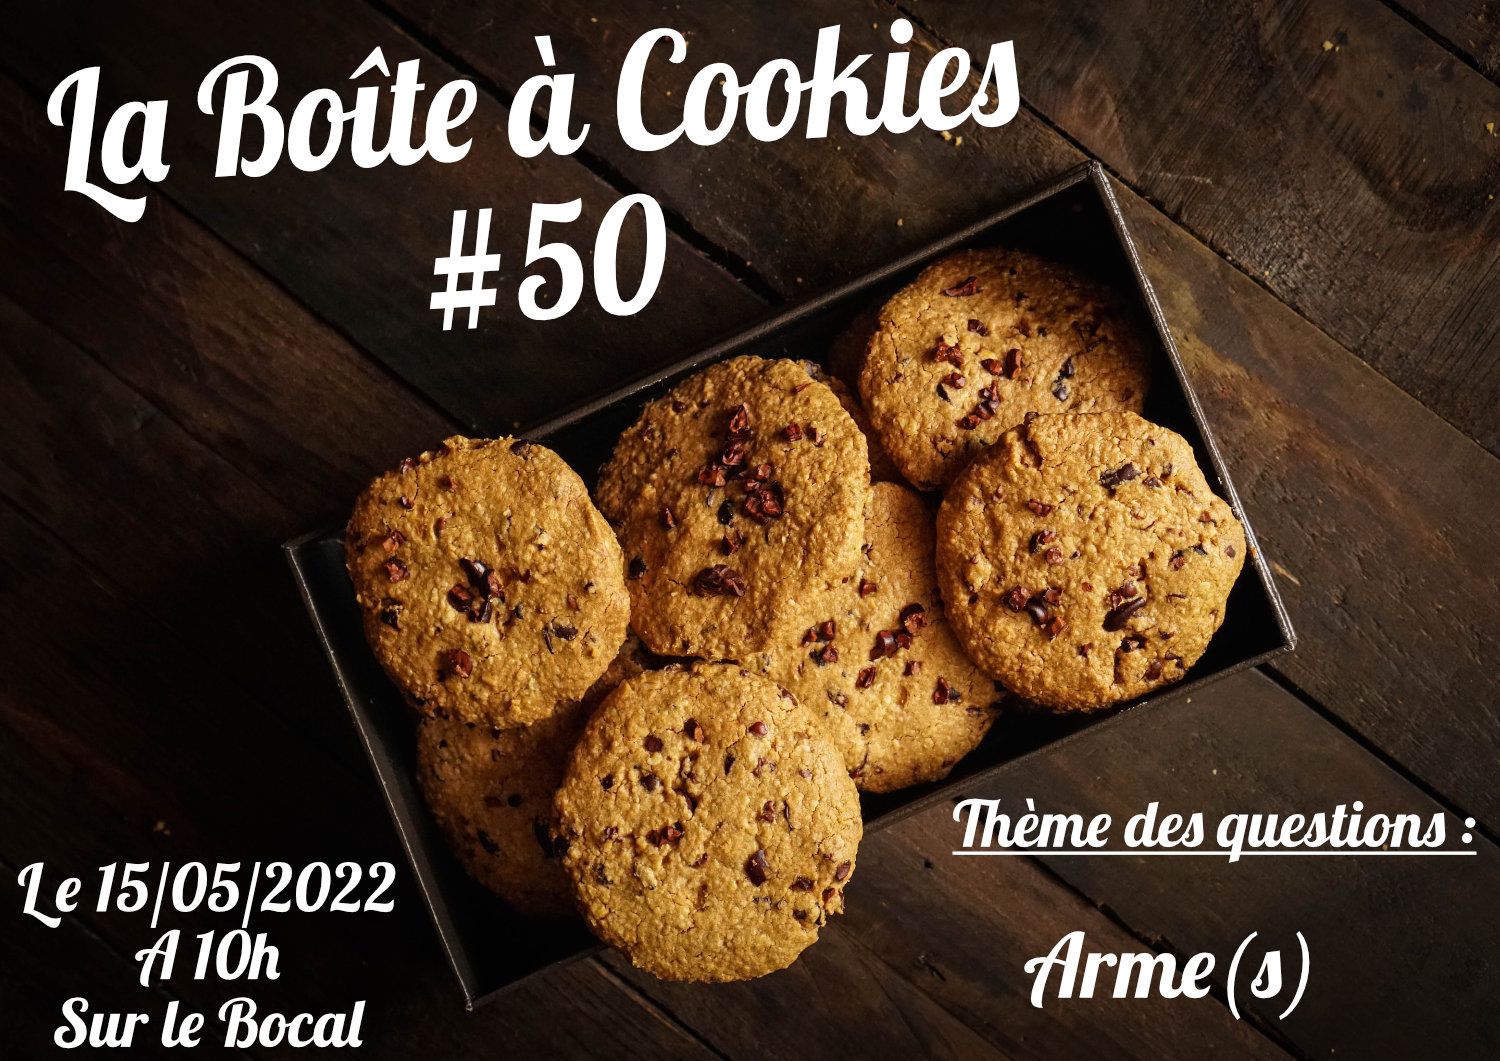 La Boîte à Cookies #50 : Arme(s)